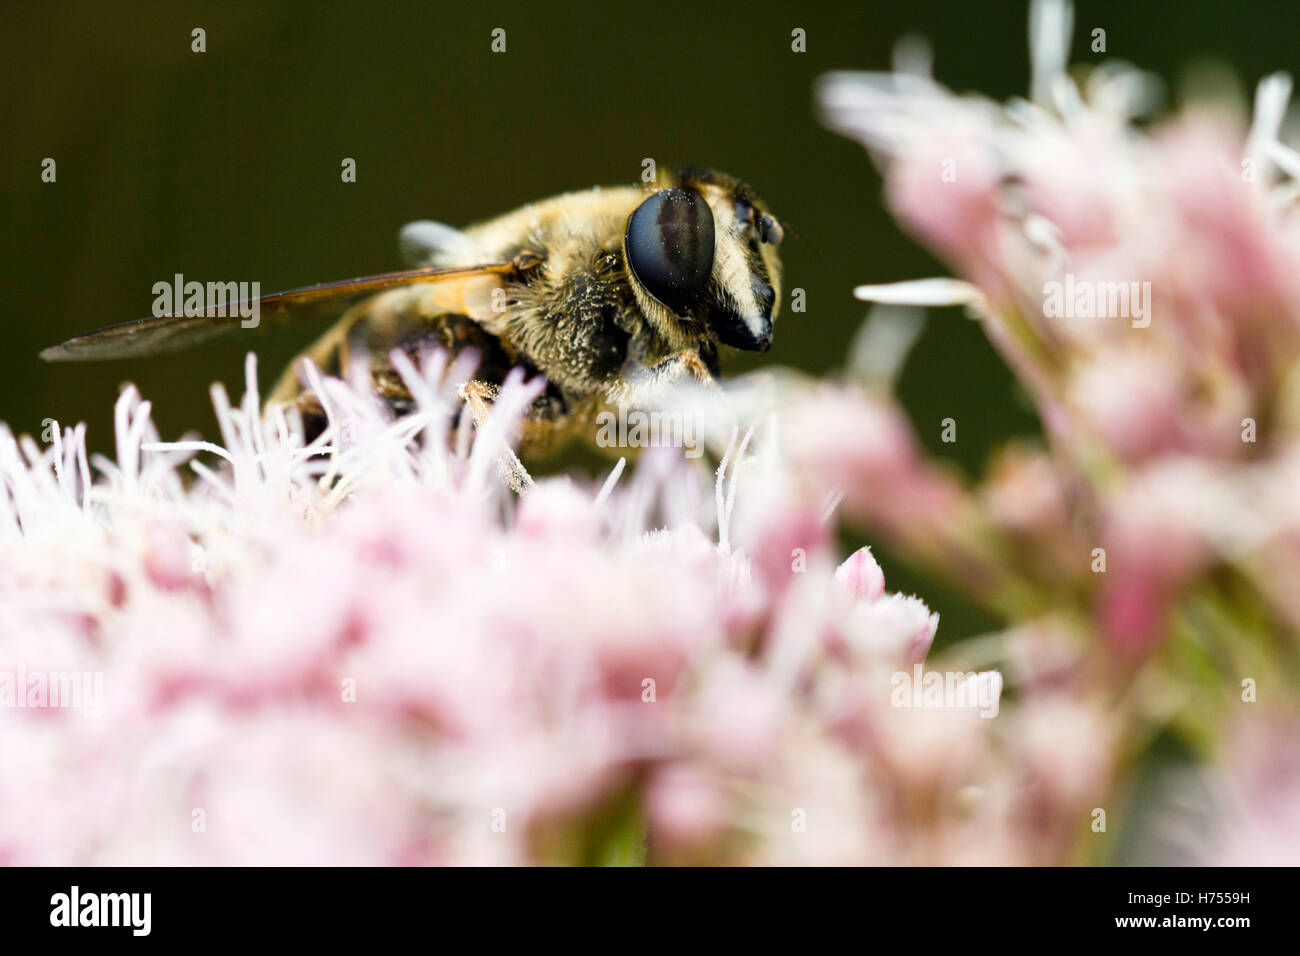 Miel de abejas recogiendo polen de una flor rosa Foto de stock